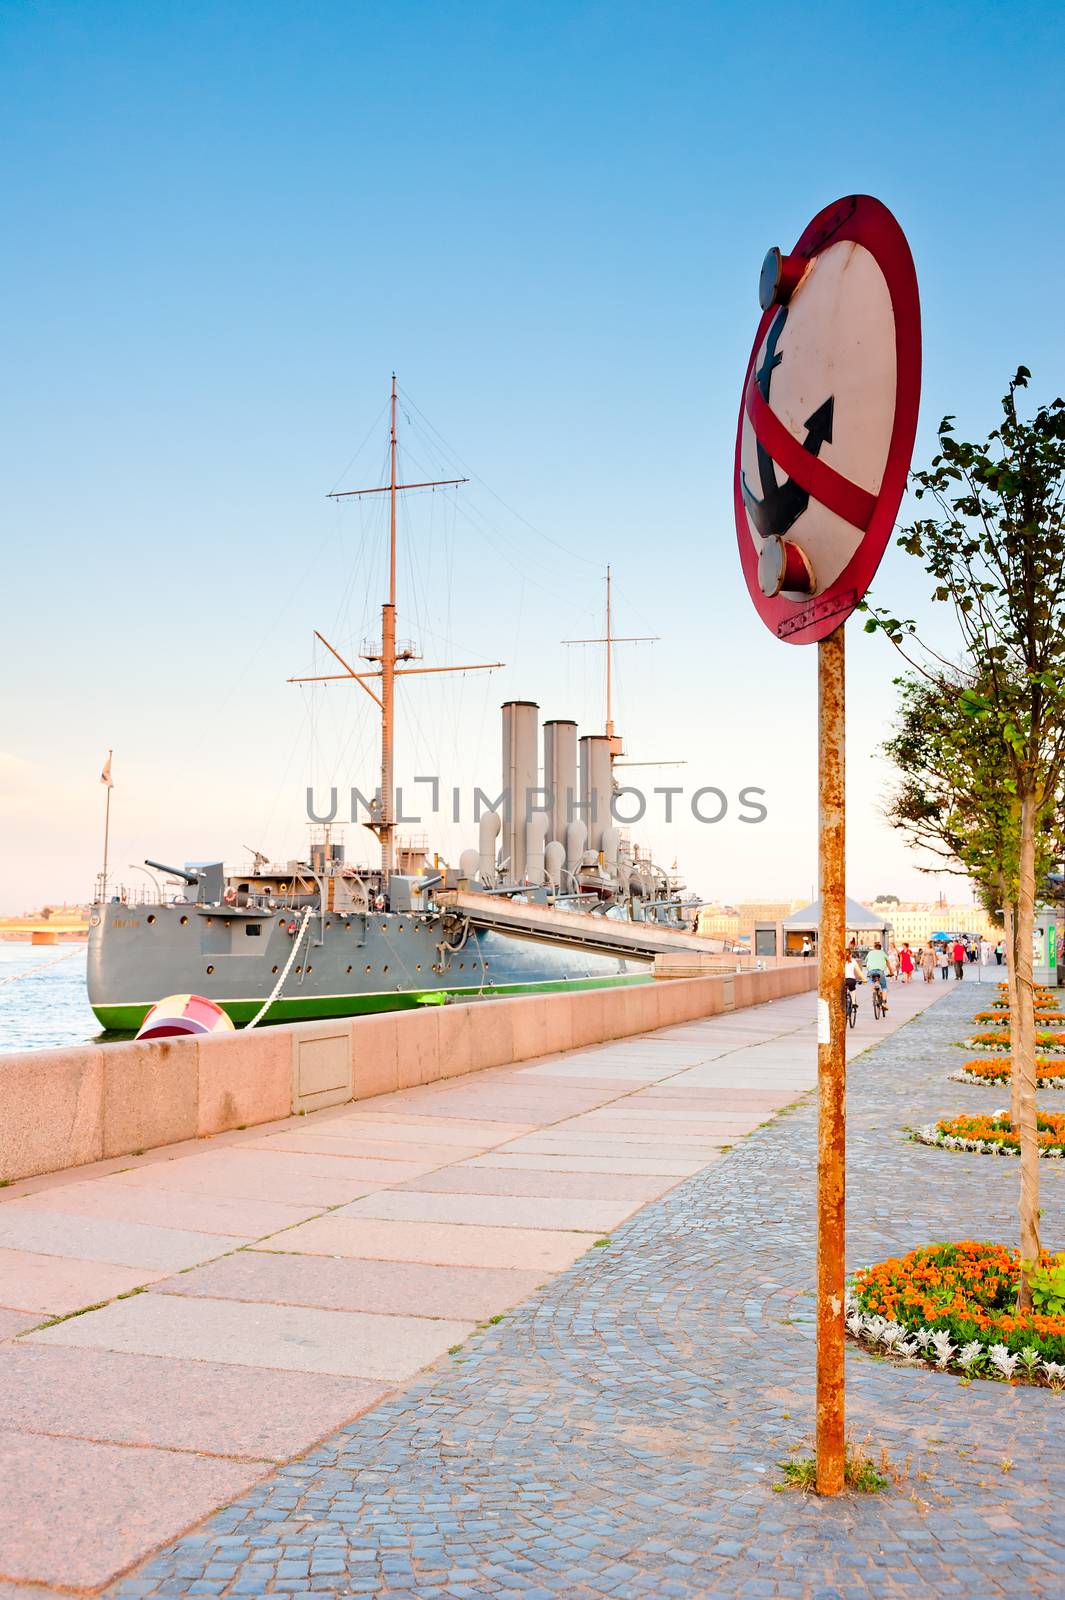 Travel to St. Petersburg-Cruiser Aurora by kosmsos111